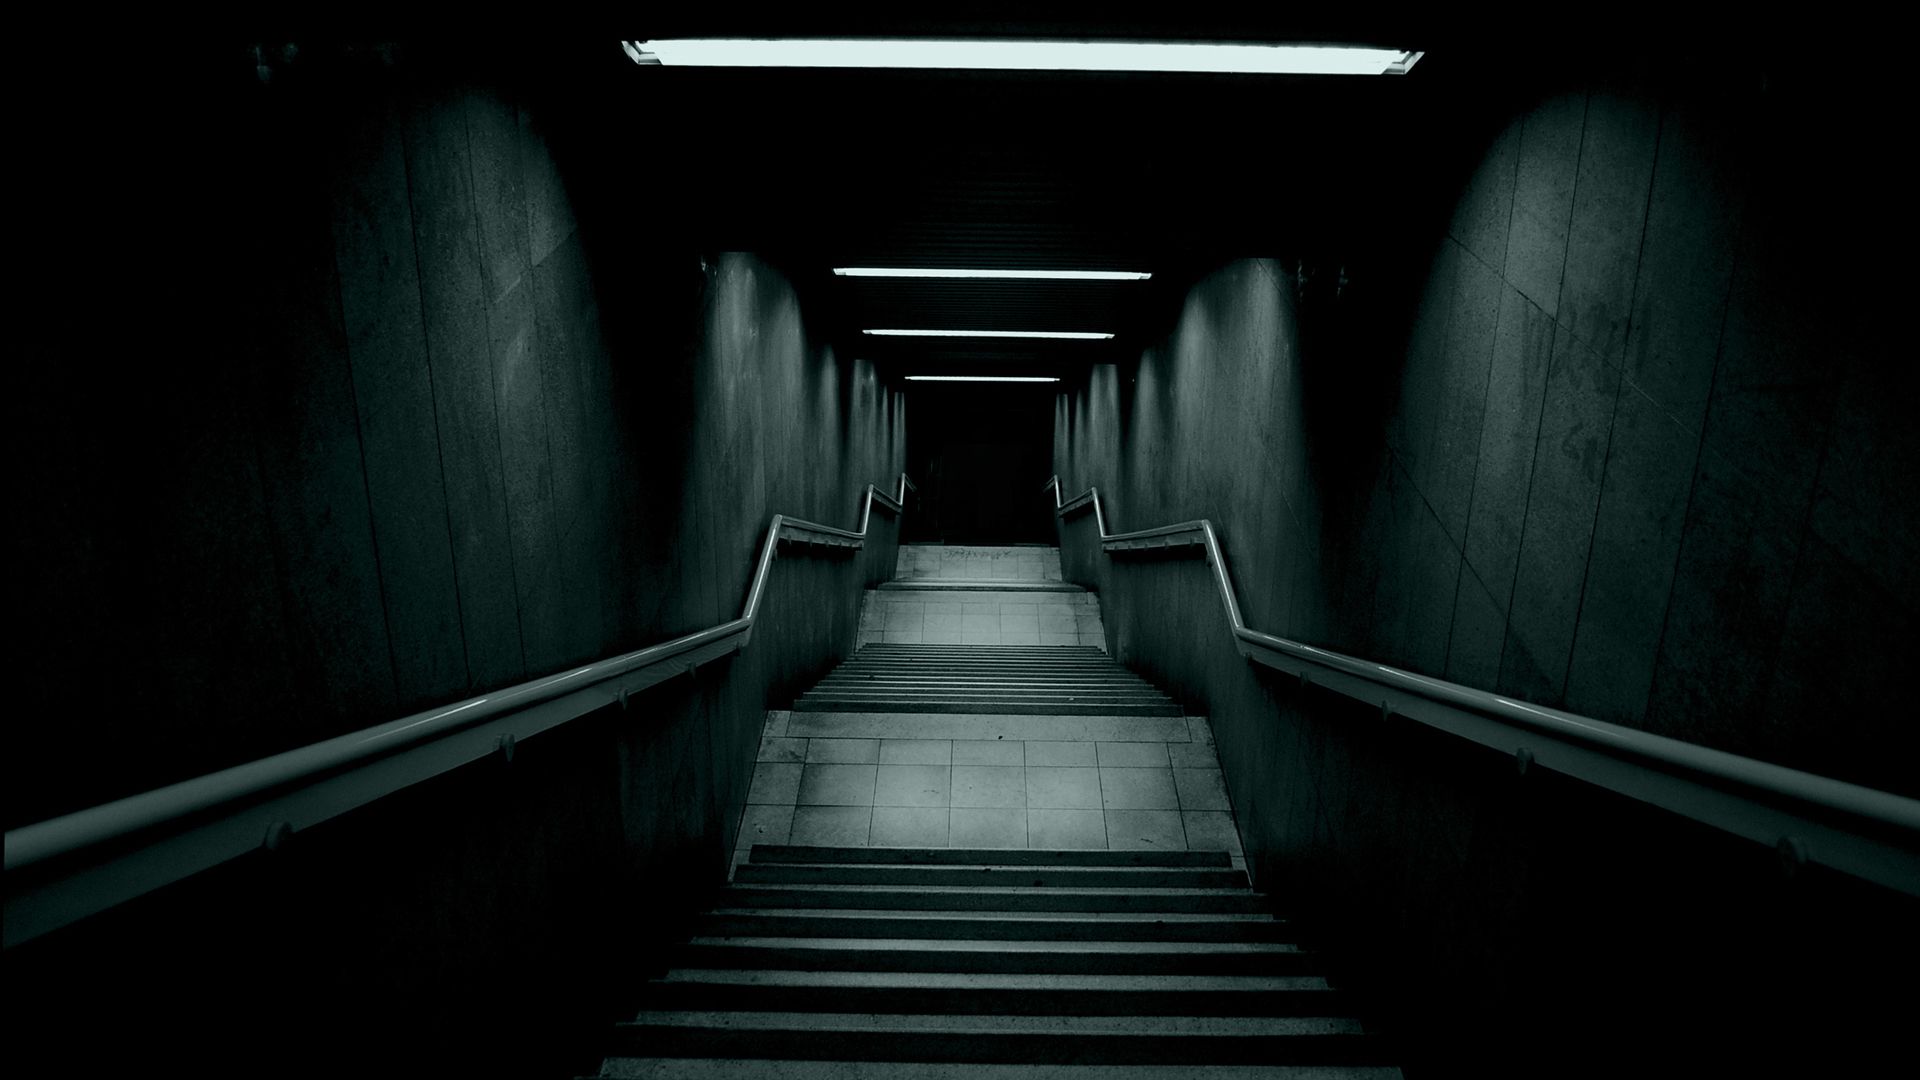 Nice-Dark-Wallpaper-Stairs-Image-Gallery-Picture.jpg